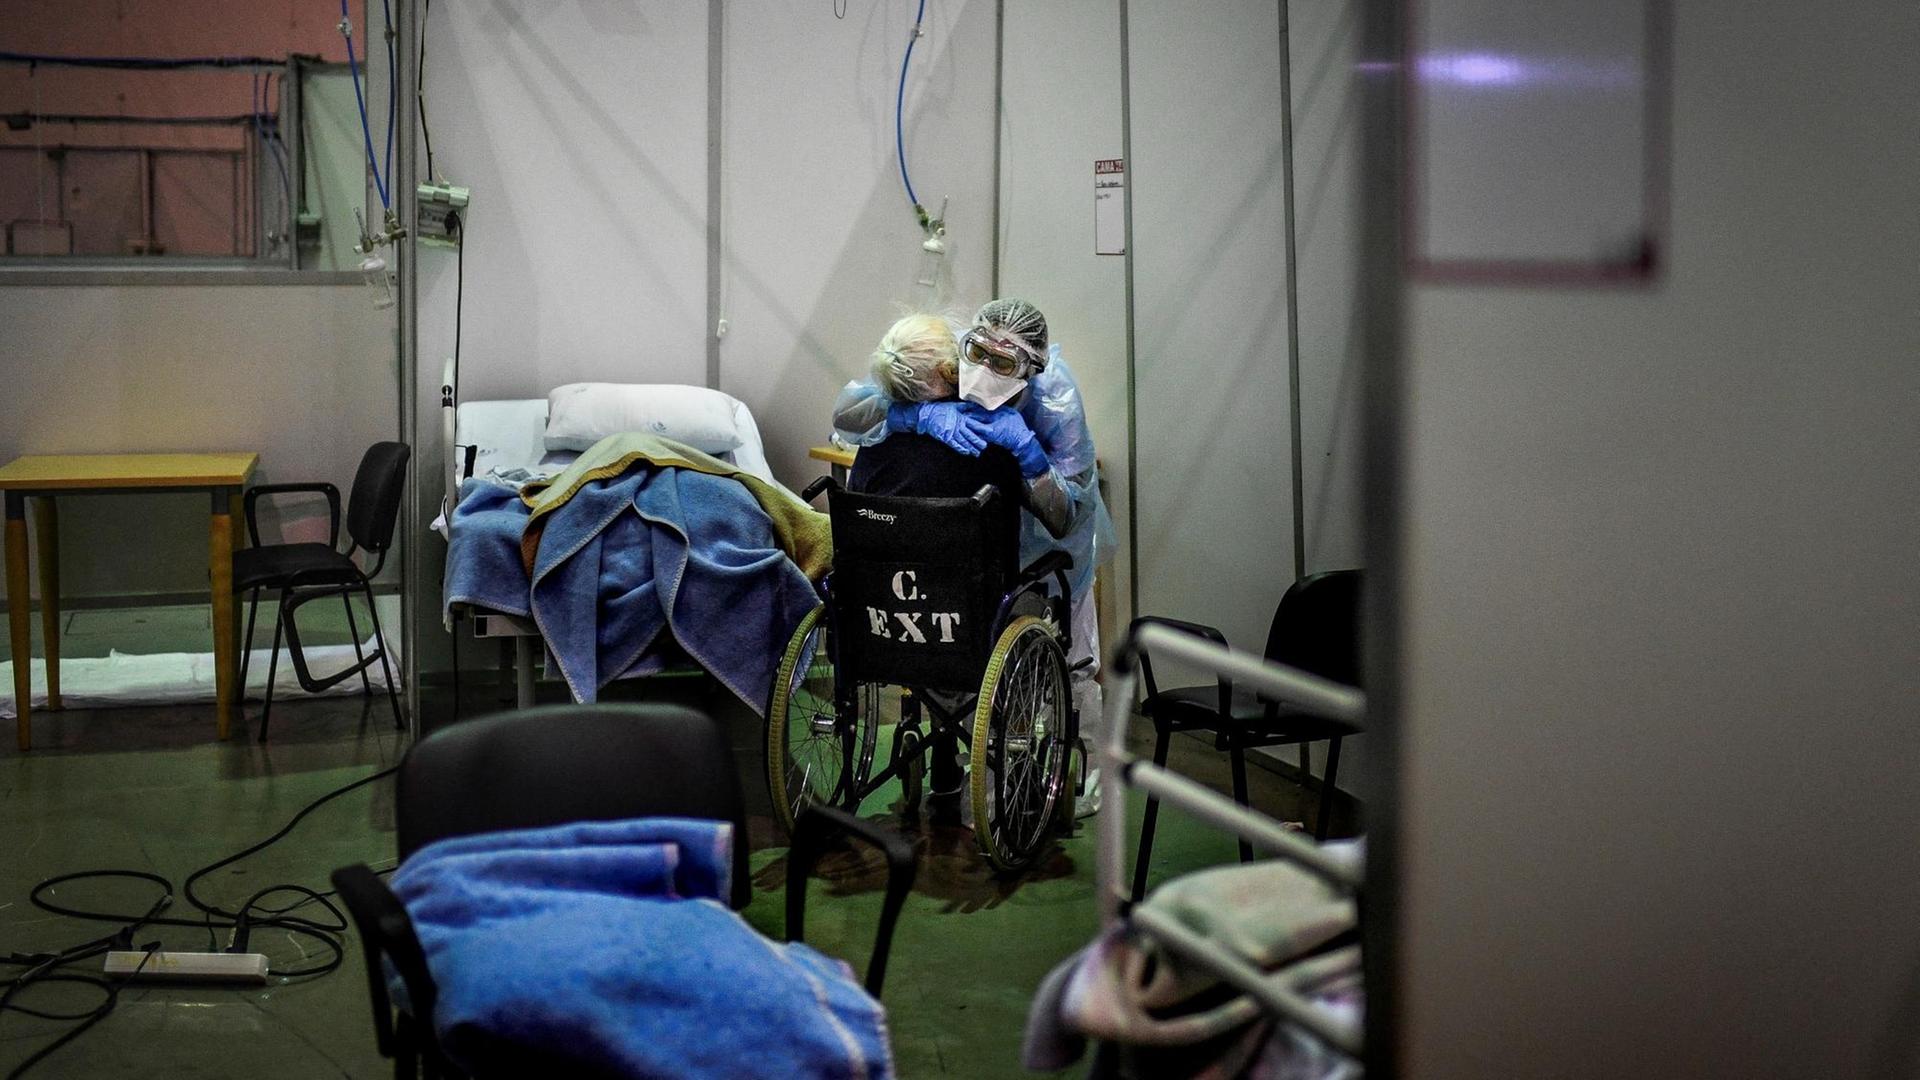 Ein Krankenpfleger verabschiedet sich von einer Covid-19 Patientin in einer Sportarena, die zu einem Krankenhaus umfunktioniert wurde. Portimao in Portugal, 9. Februar, 2021.